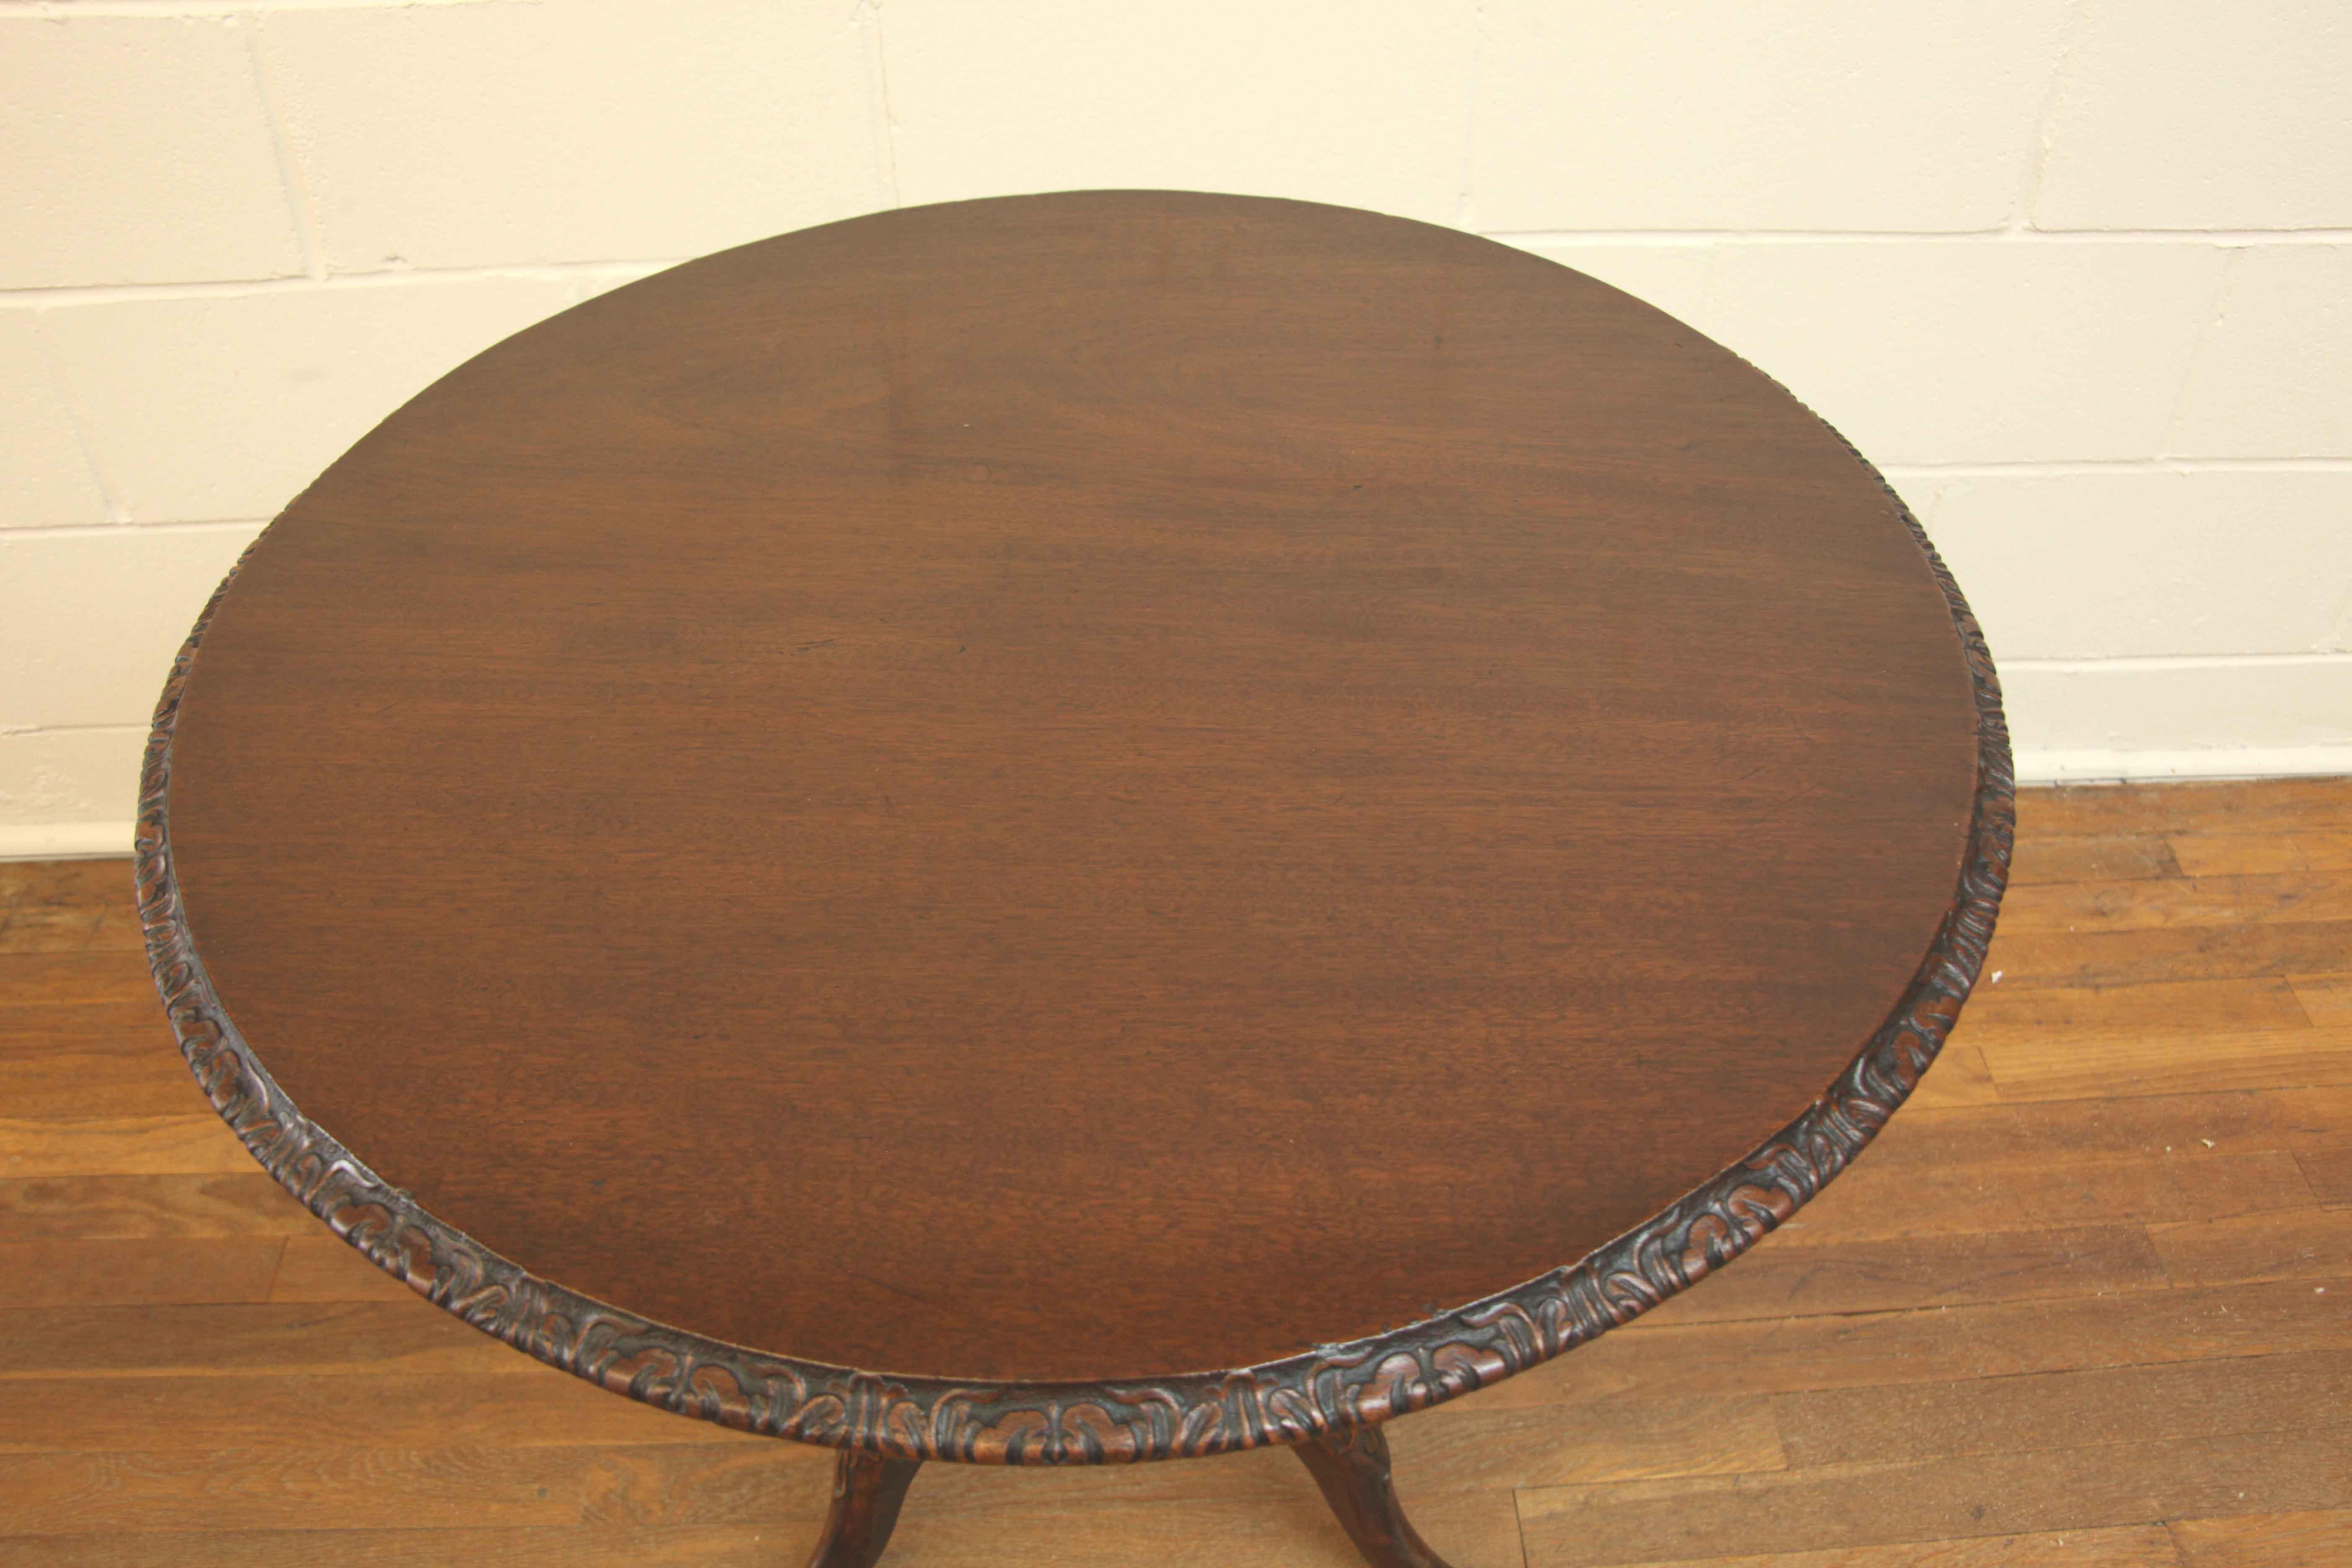 Kippbarer Tisch George III,  Die Oberseite hat eine warme, verblasste Farbe und einen kunstvoll geschnitzten Rand, der Mittelschaft ist mit Balustern gedreht und an der Basis geschnitzt.  Oben auf den Beinen befindet sich eine geschnitzte Kartusche